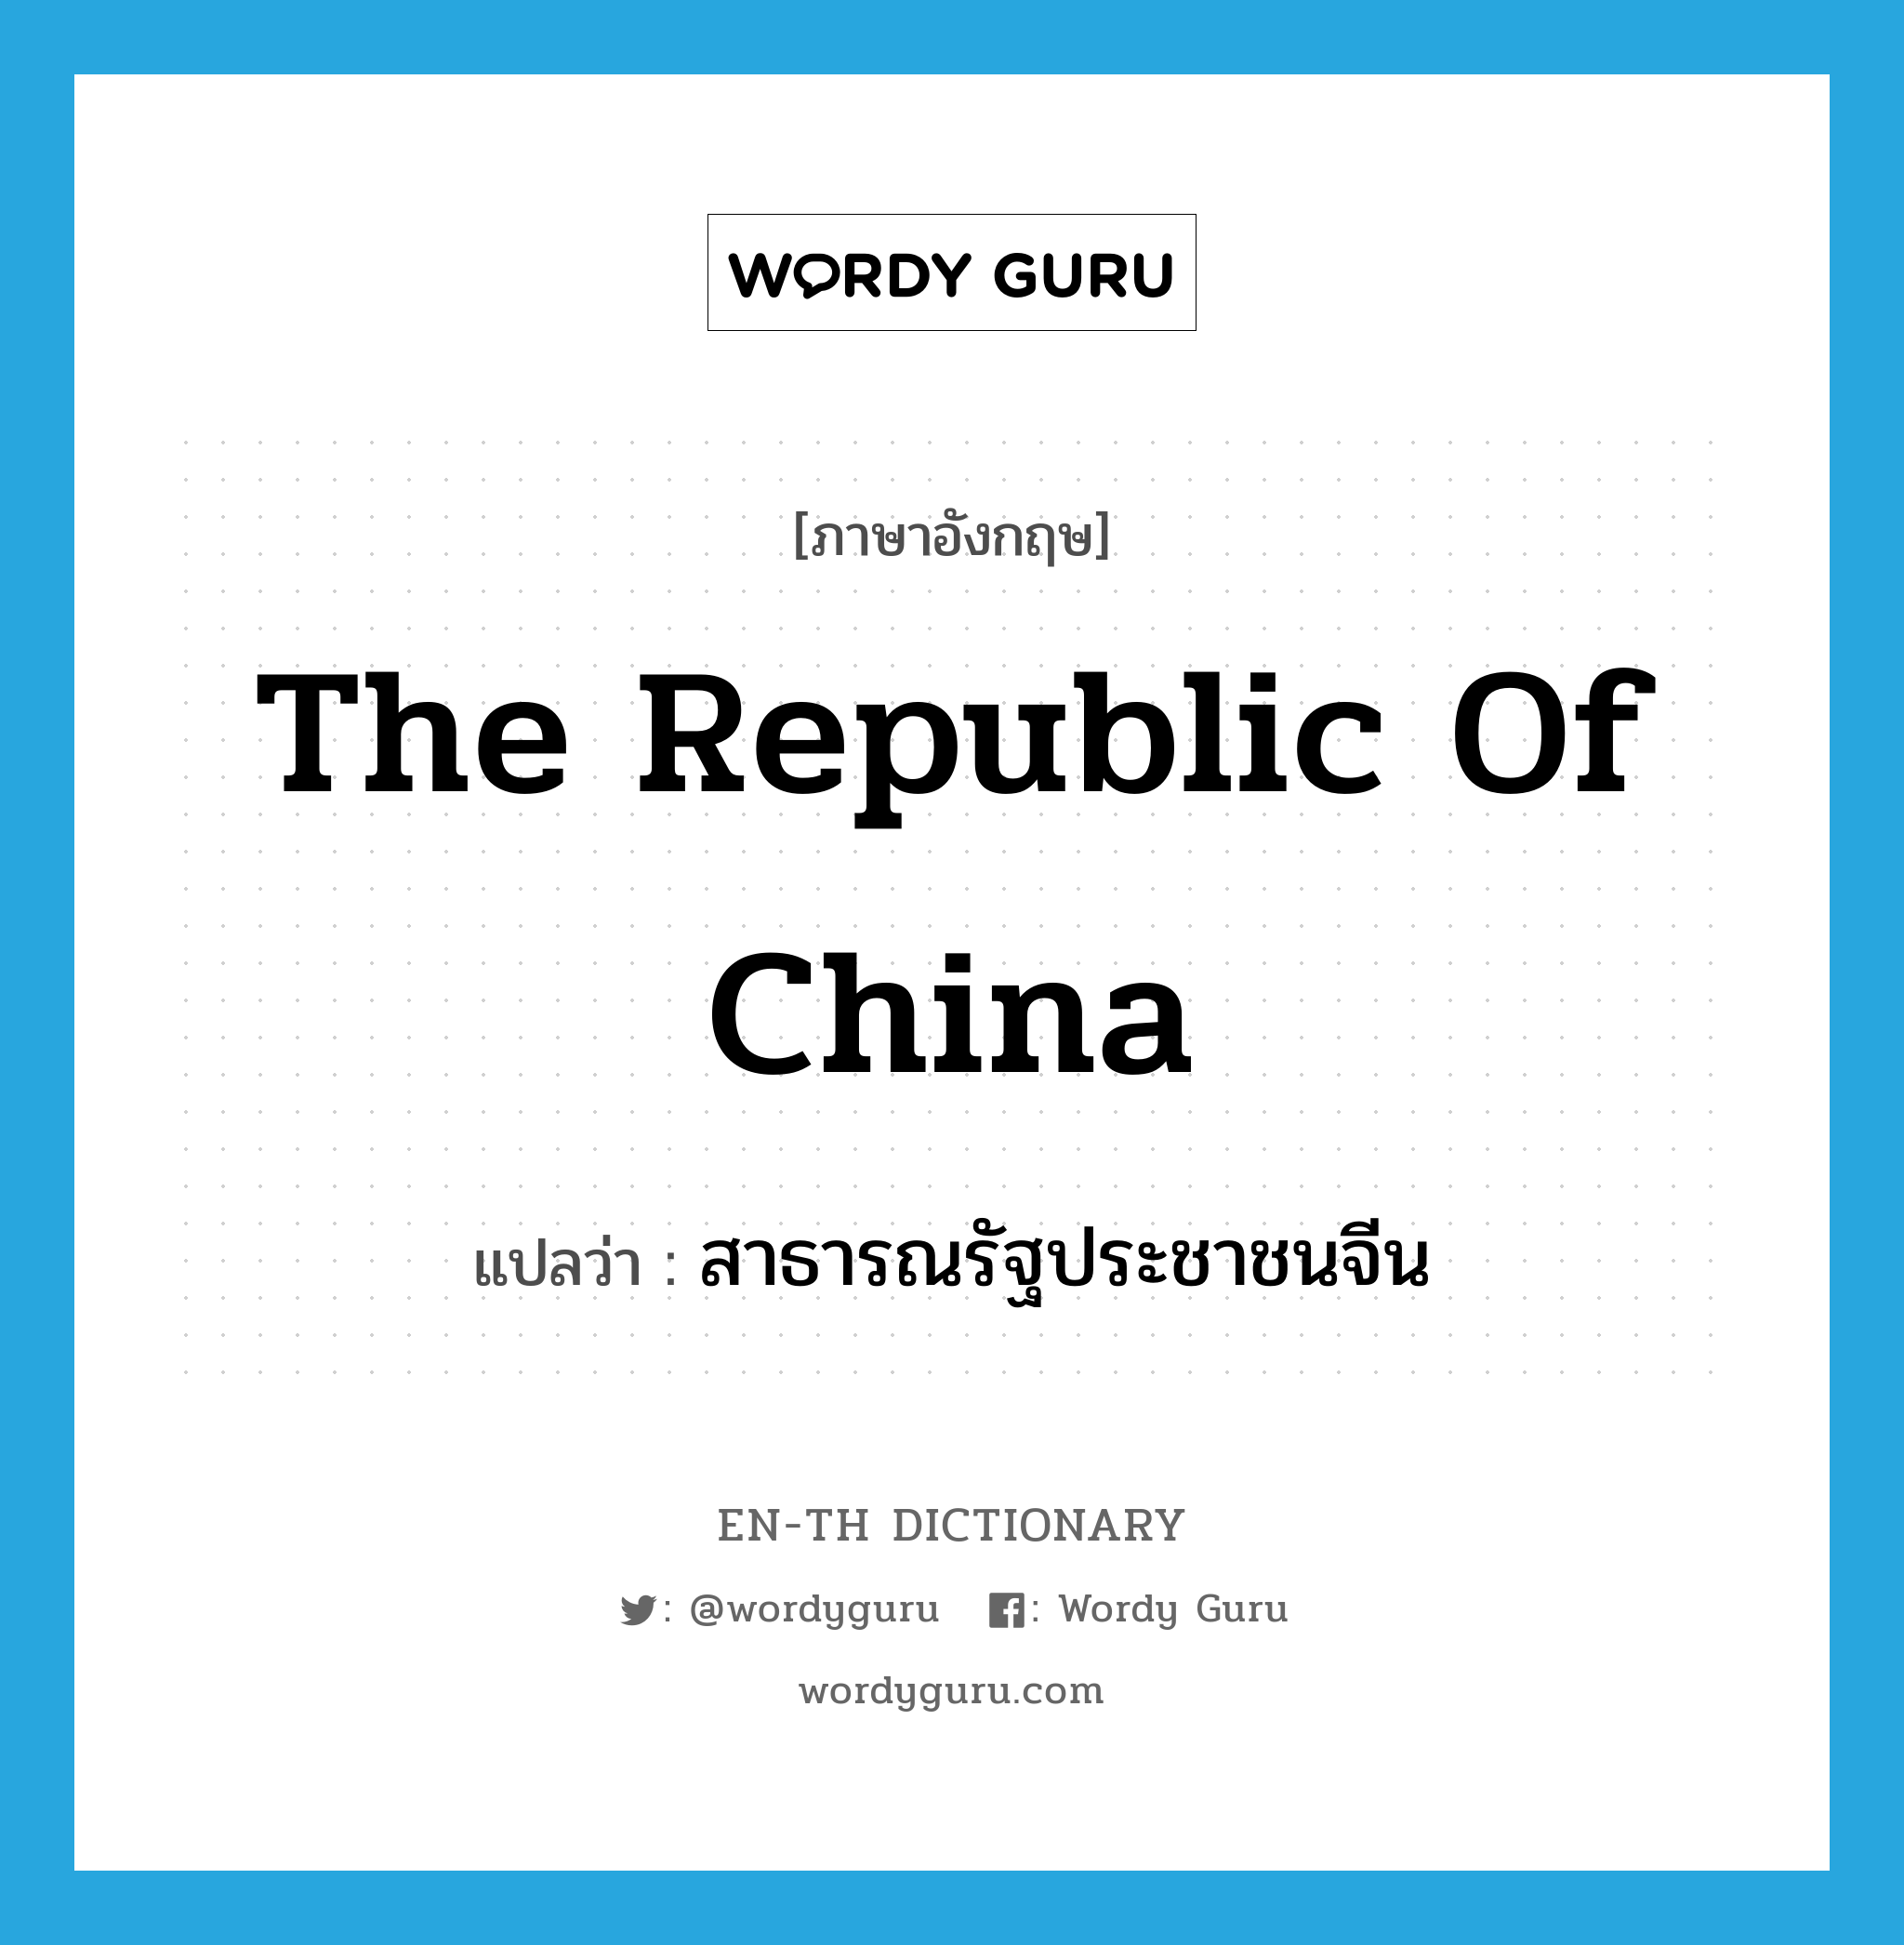 The Republic of China แปลว่า?, คำศัพท์ภาษาอังกฤษ The Republic of China แปลว่า สาธารณรัฐประชาชนจีน ประเภท N หมวด N